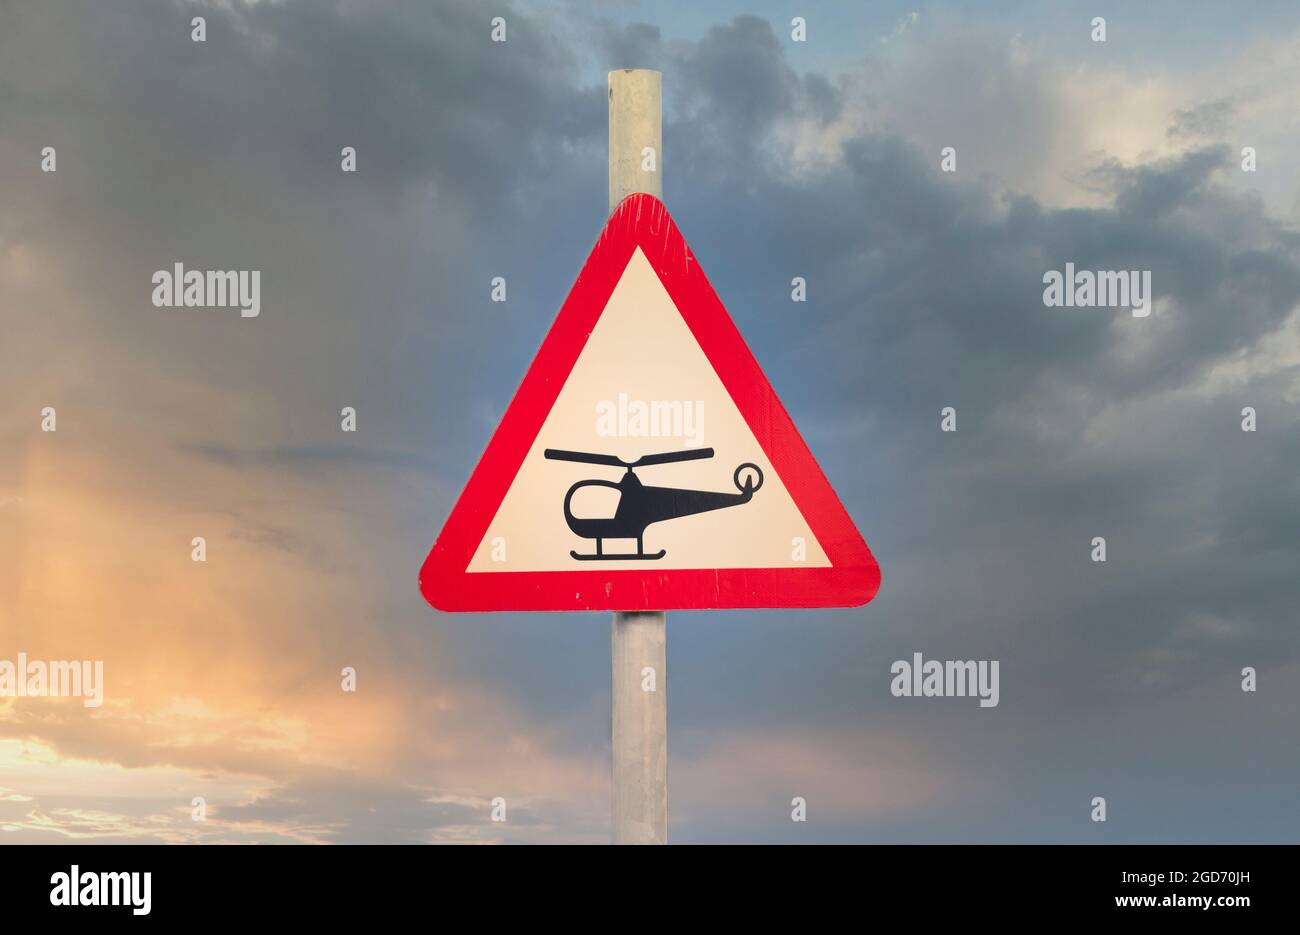 Hubschrauber tief fliegender oder plötzlicher Lärm von Hubschraubern Vorsicht  Schild Stockfotografie - Alamy